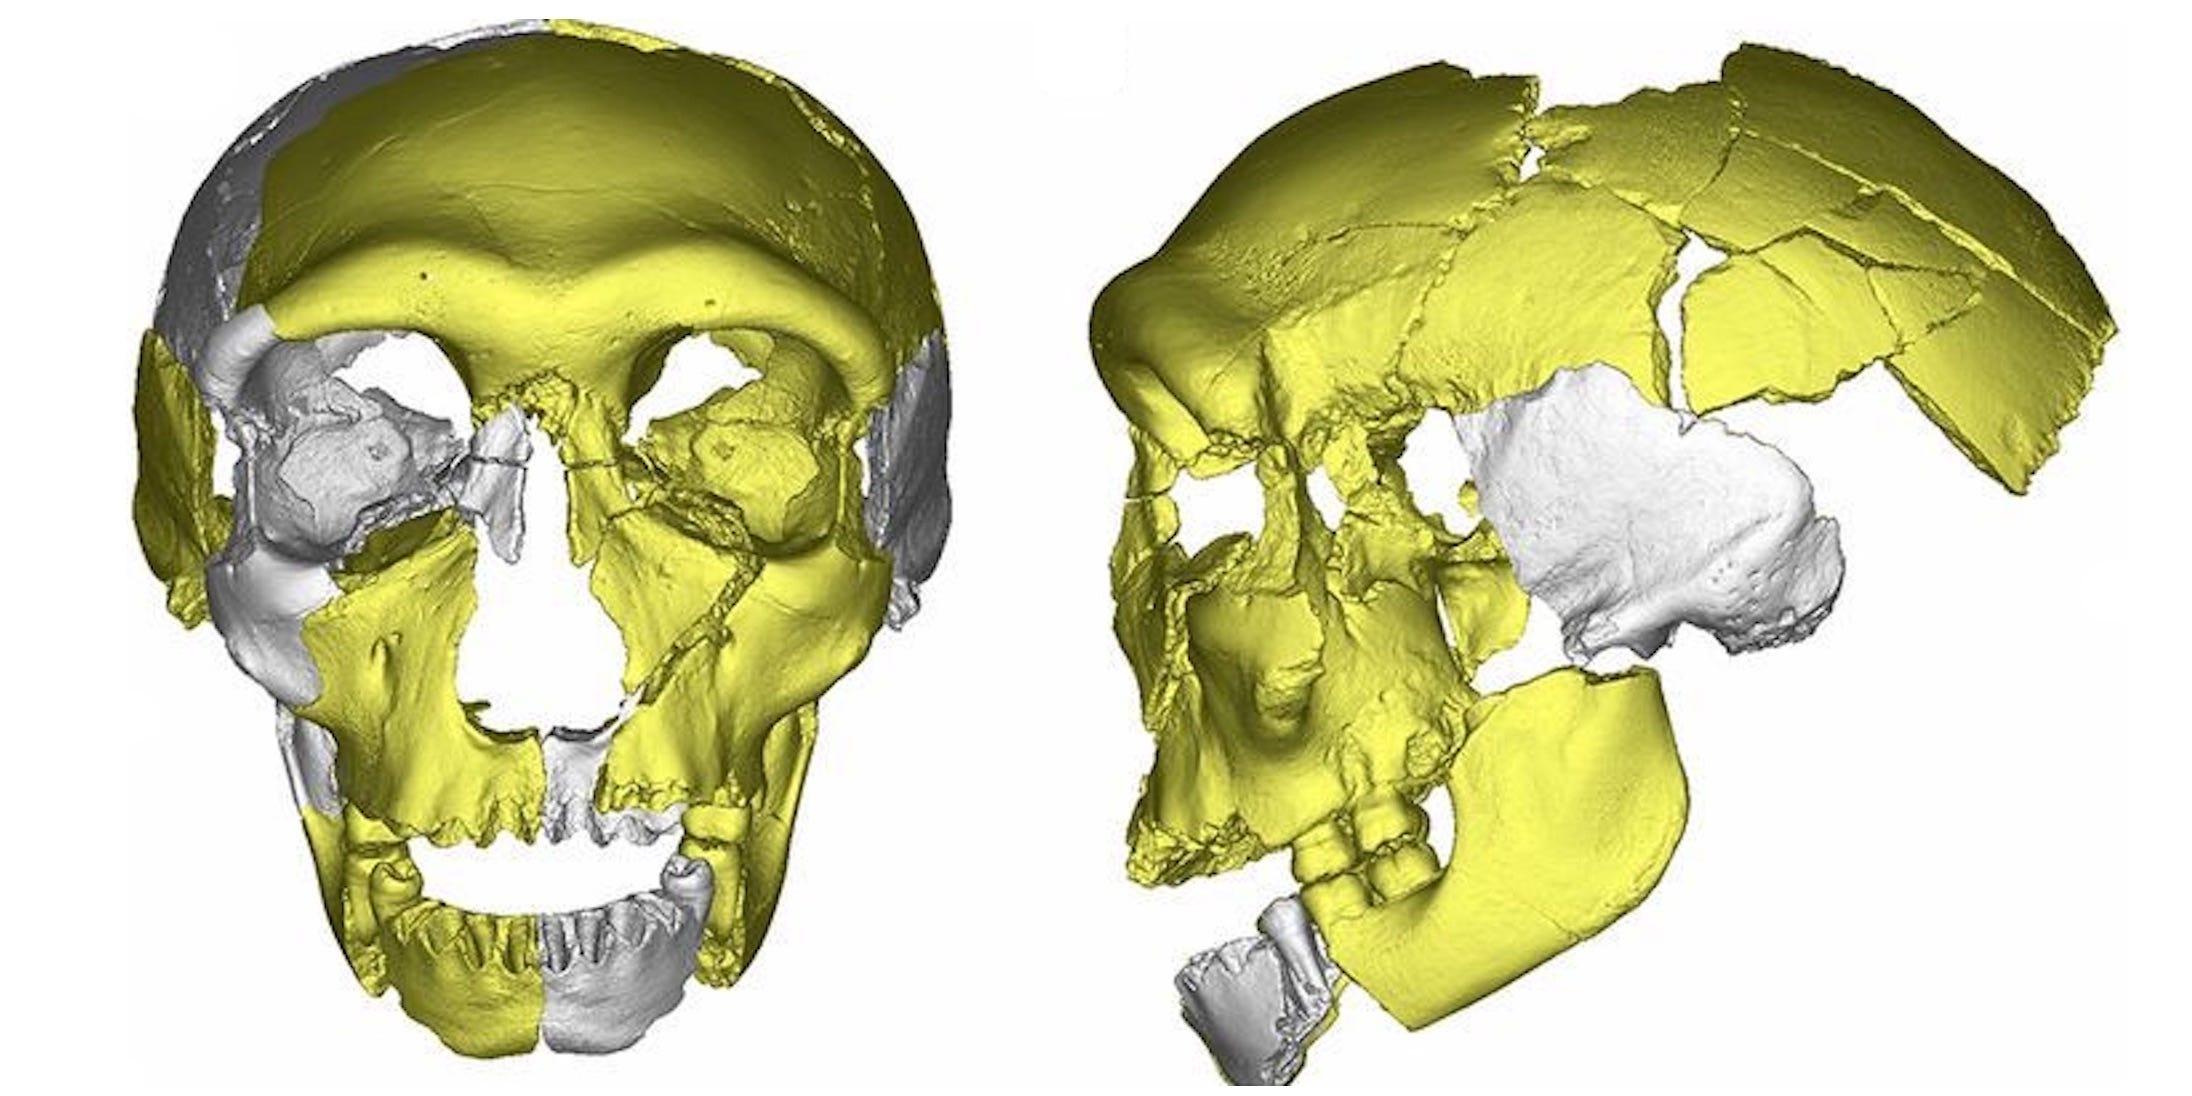 謎の頭蓋骨が科学者を困惑させている…新たな人類の祖先か？